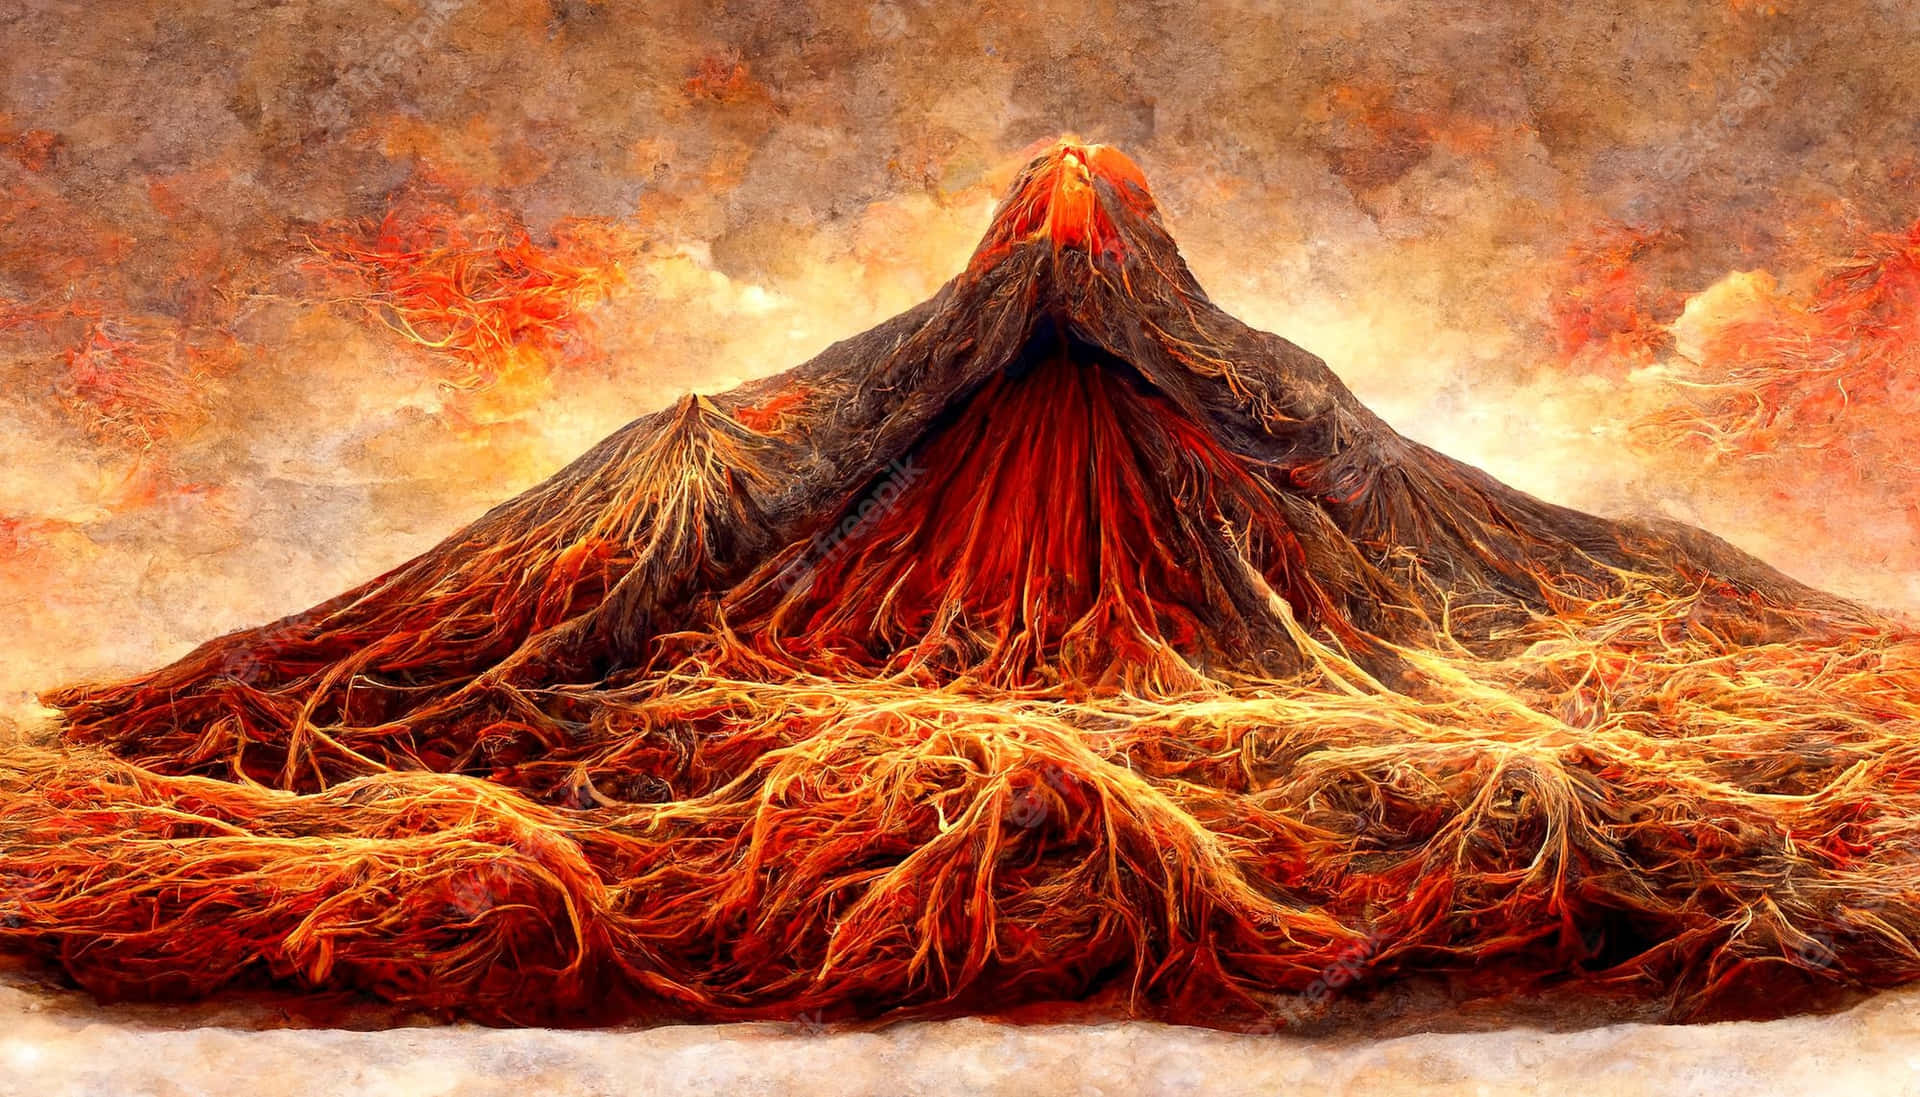 Einlebendig Roter Und Orangener Himmel, Beleuchtet Durch Den Ausbruch Eines Vulkans.